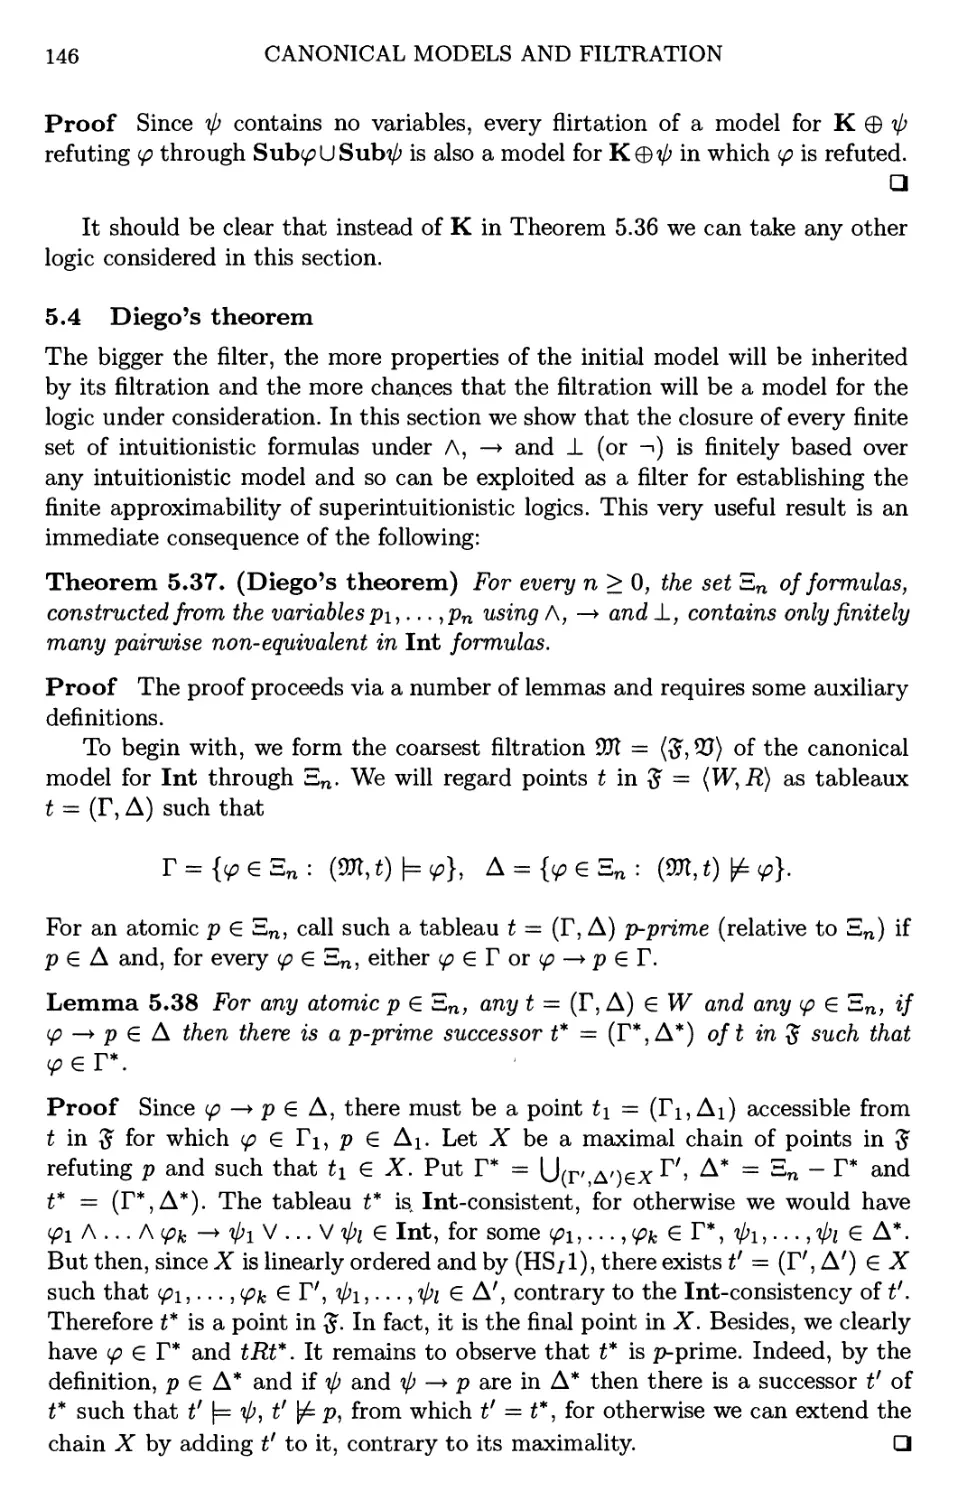 5.4 Diego's theorem